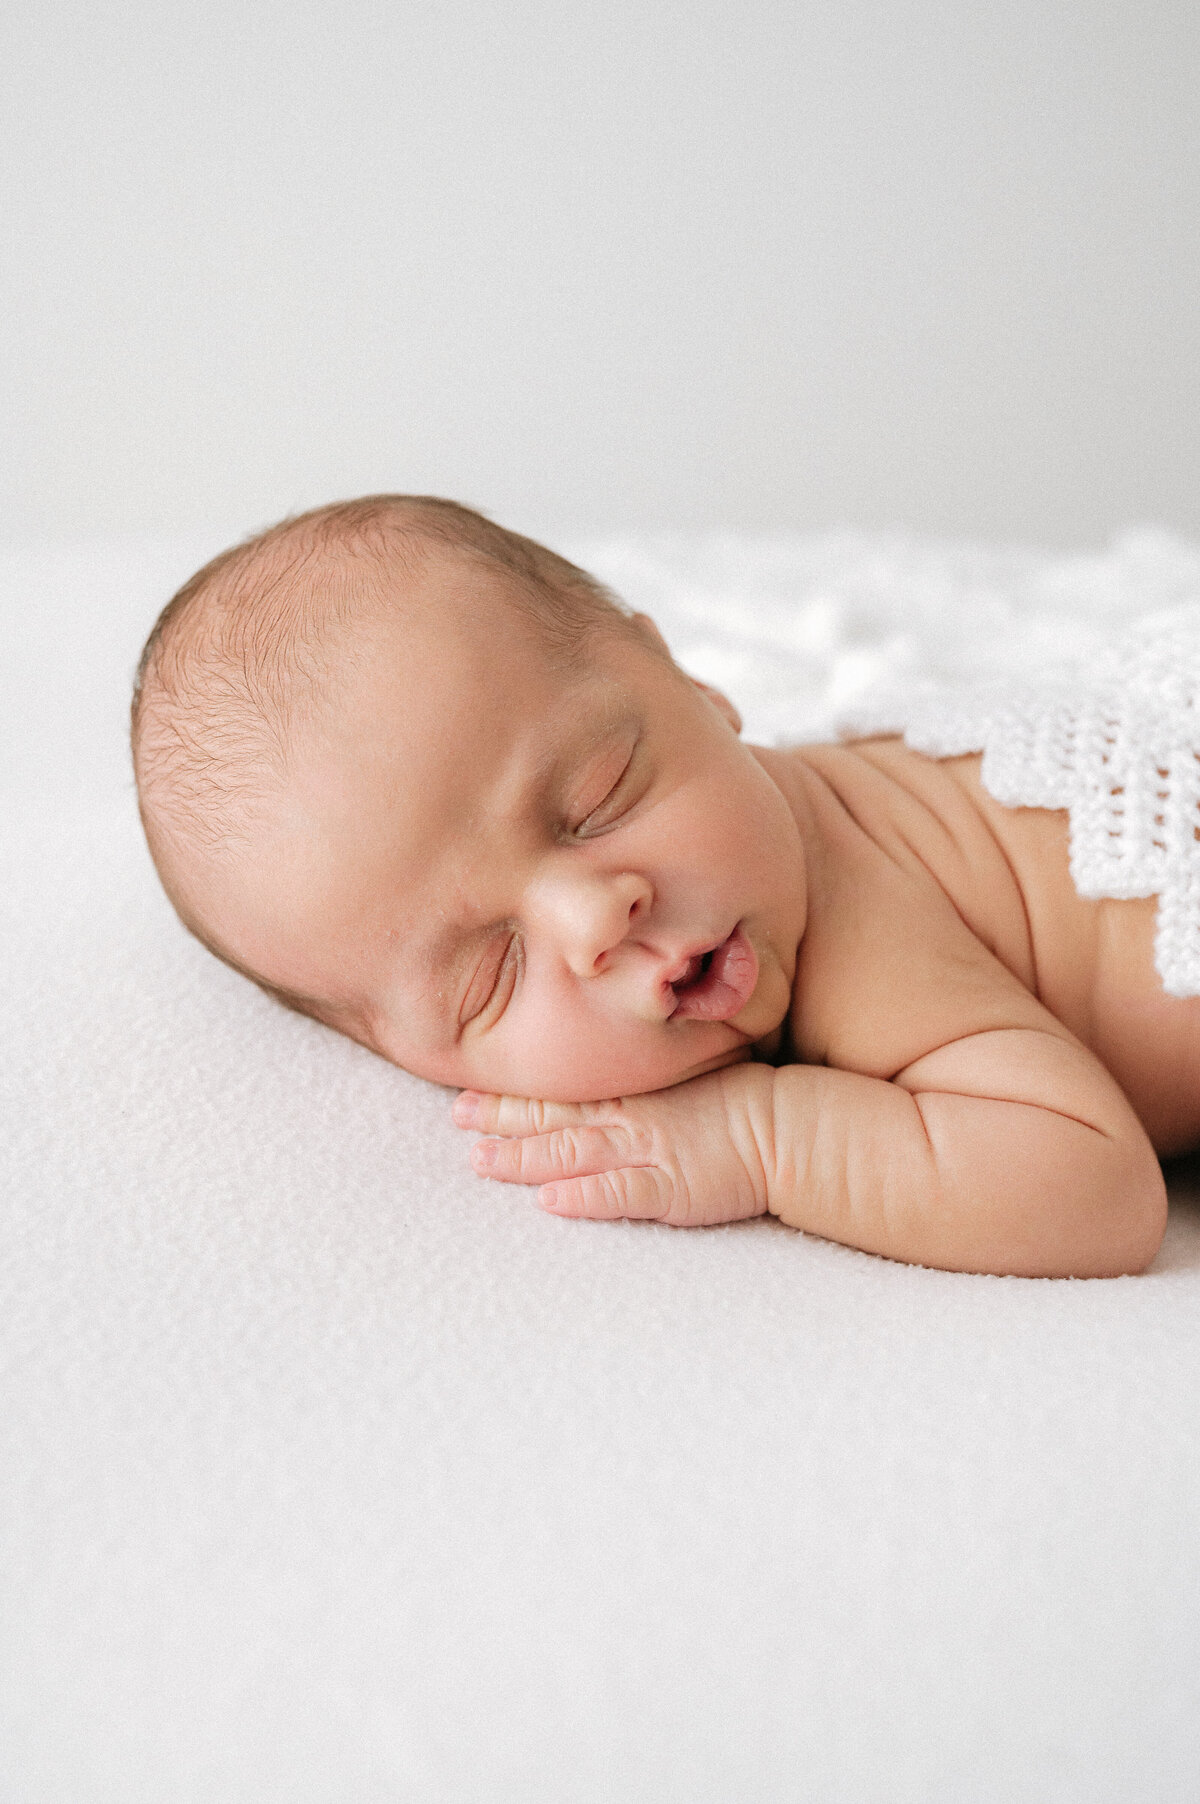 Cute newborn baby asleep on a white pillow